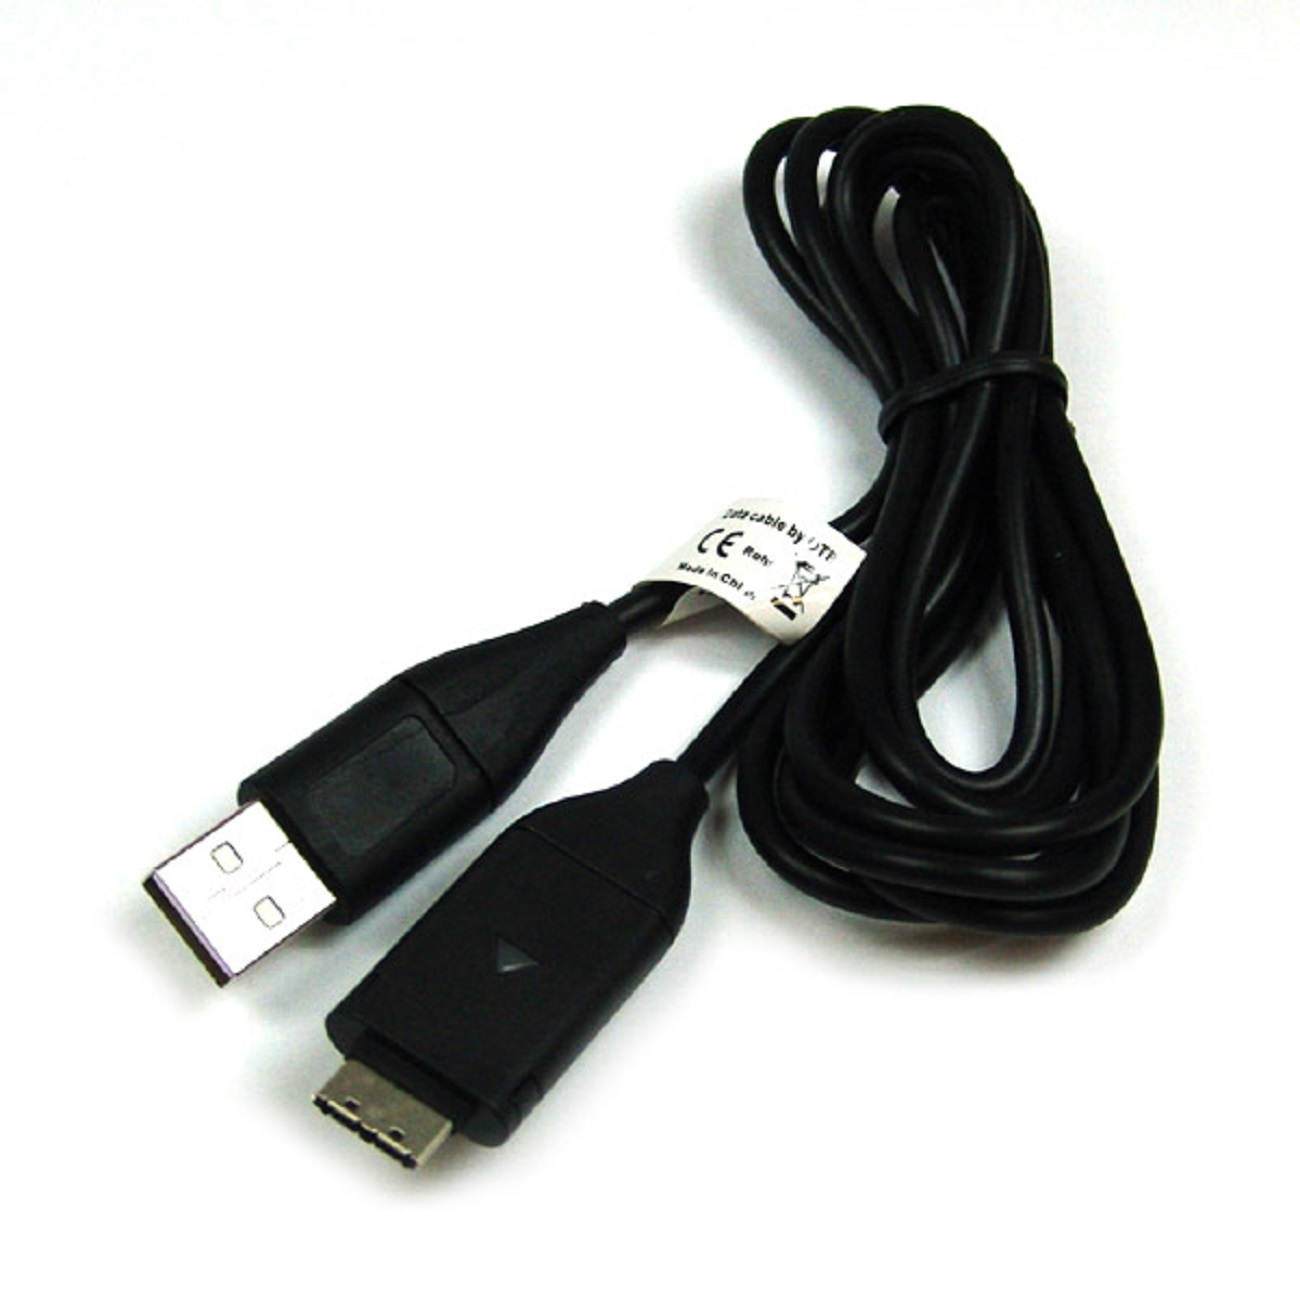 MOBILOTEC USB-Ladekabel kompatibel mit Samsung Zubehör Samsung, schwarz PL55